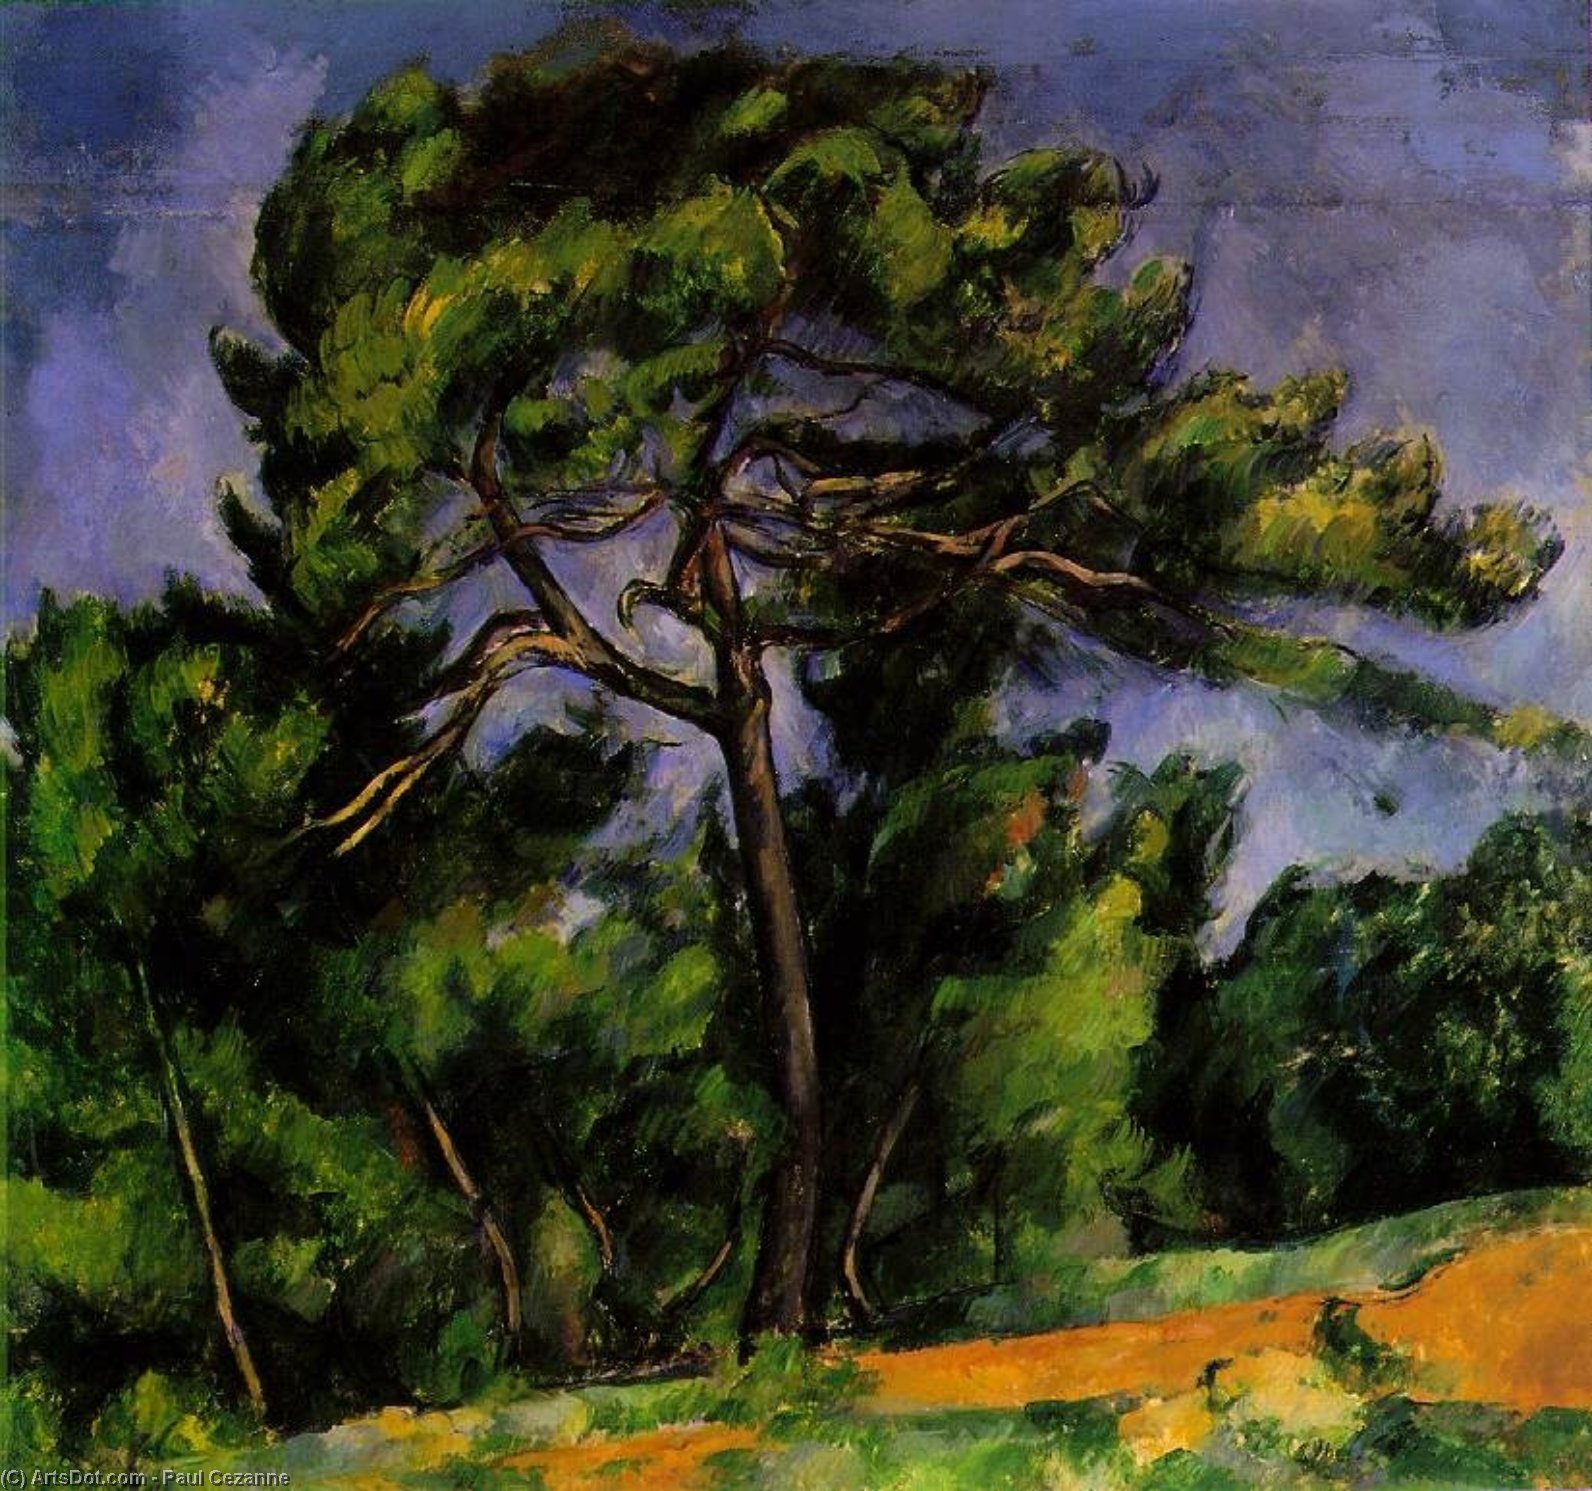 WikiOO.org - Encyclopedia of Fine Arts - Lukisan, Artwork Paul Cezanne - The Great Pine